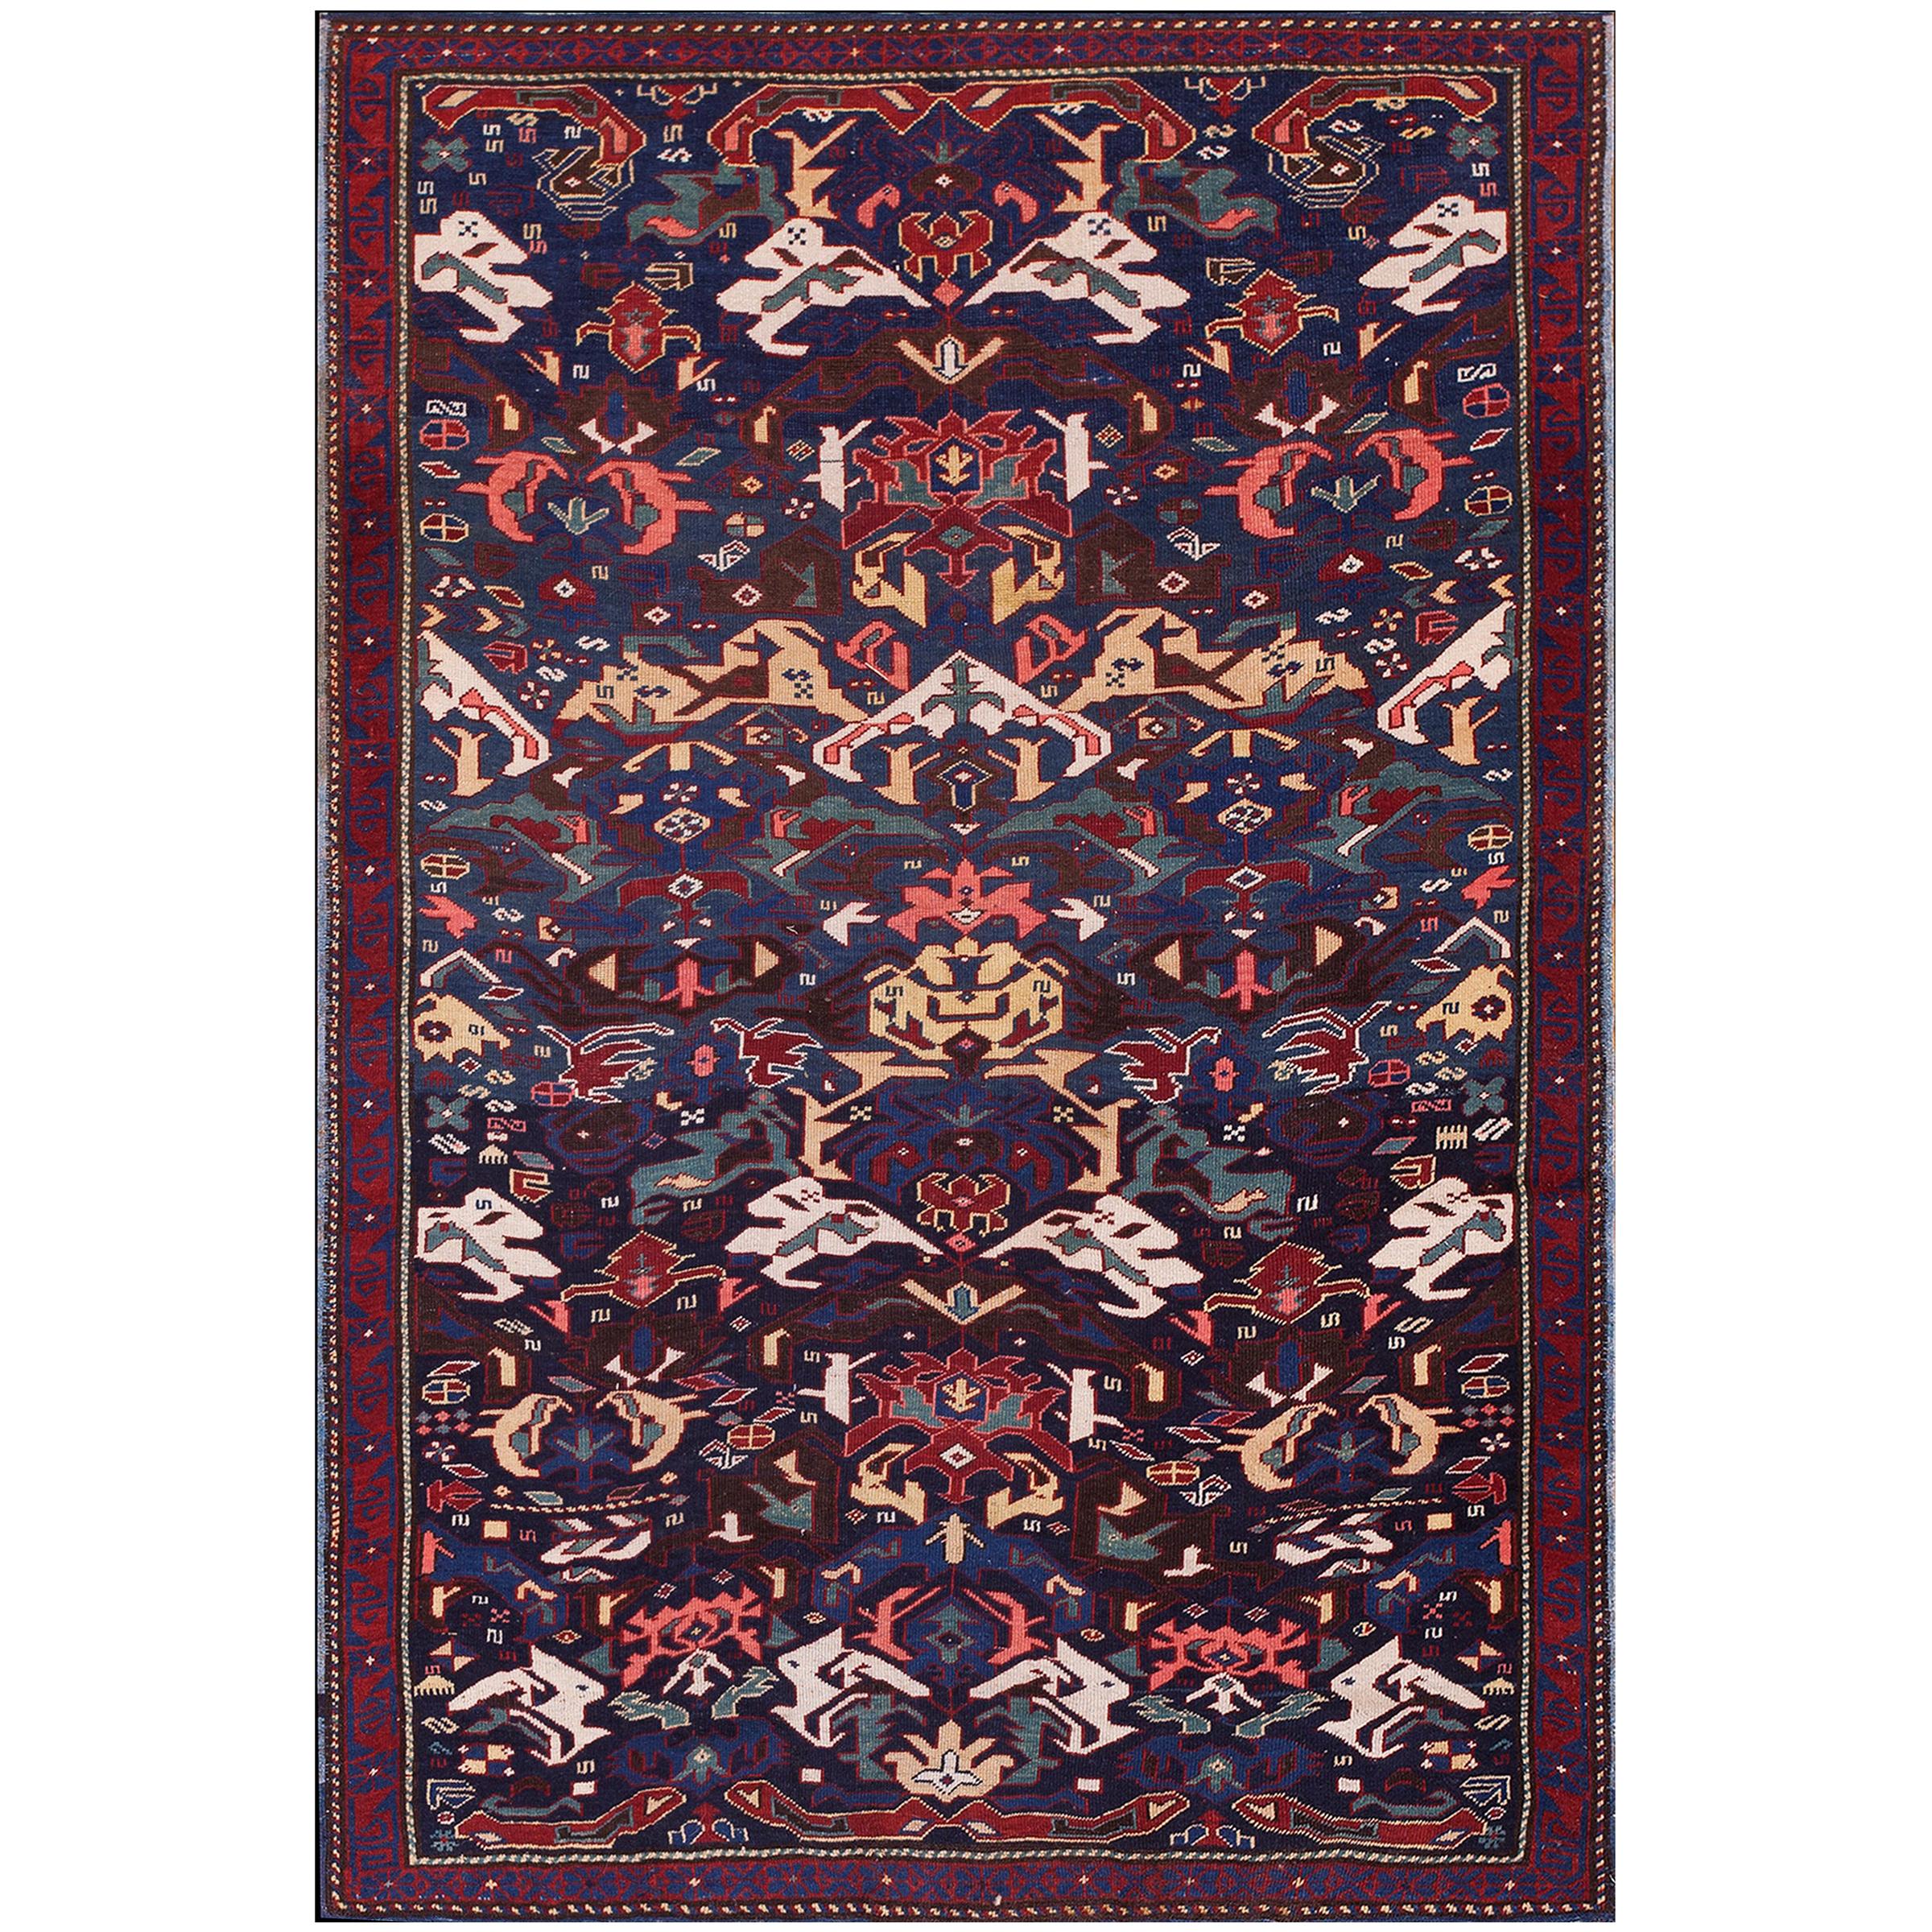 Kaukasischer Zeychor-Teppich des 19. Jahrhunderts ( 4'4" x 6'8" - 132 x 203)